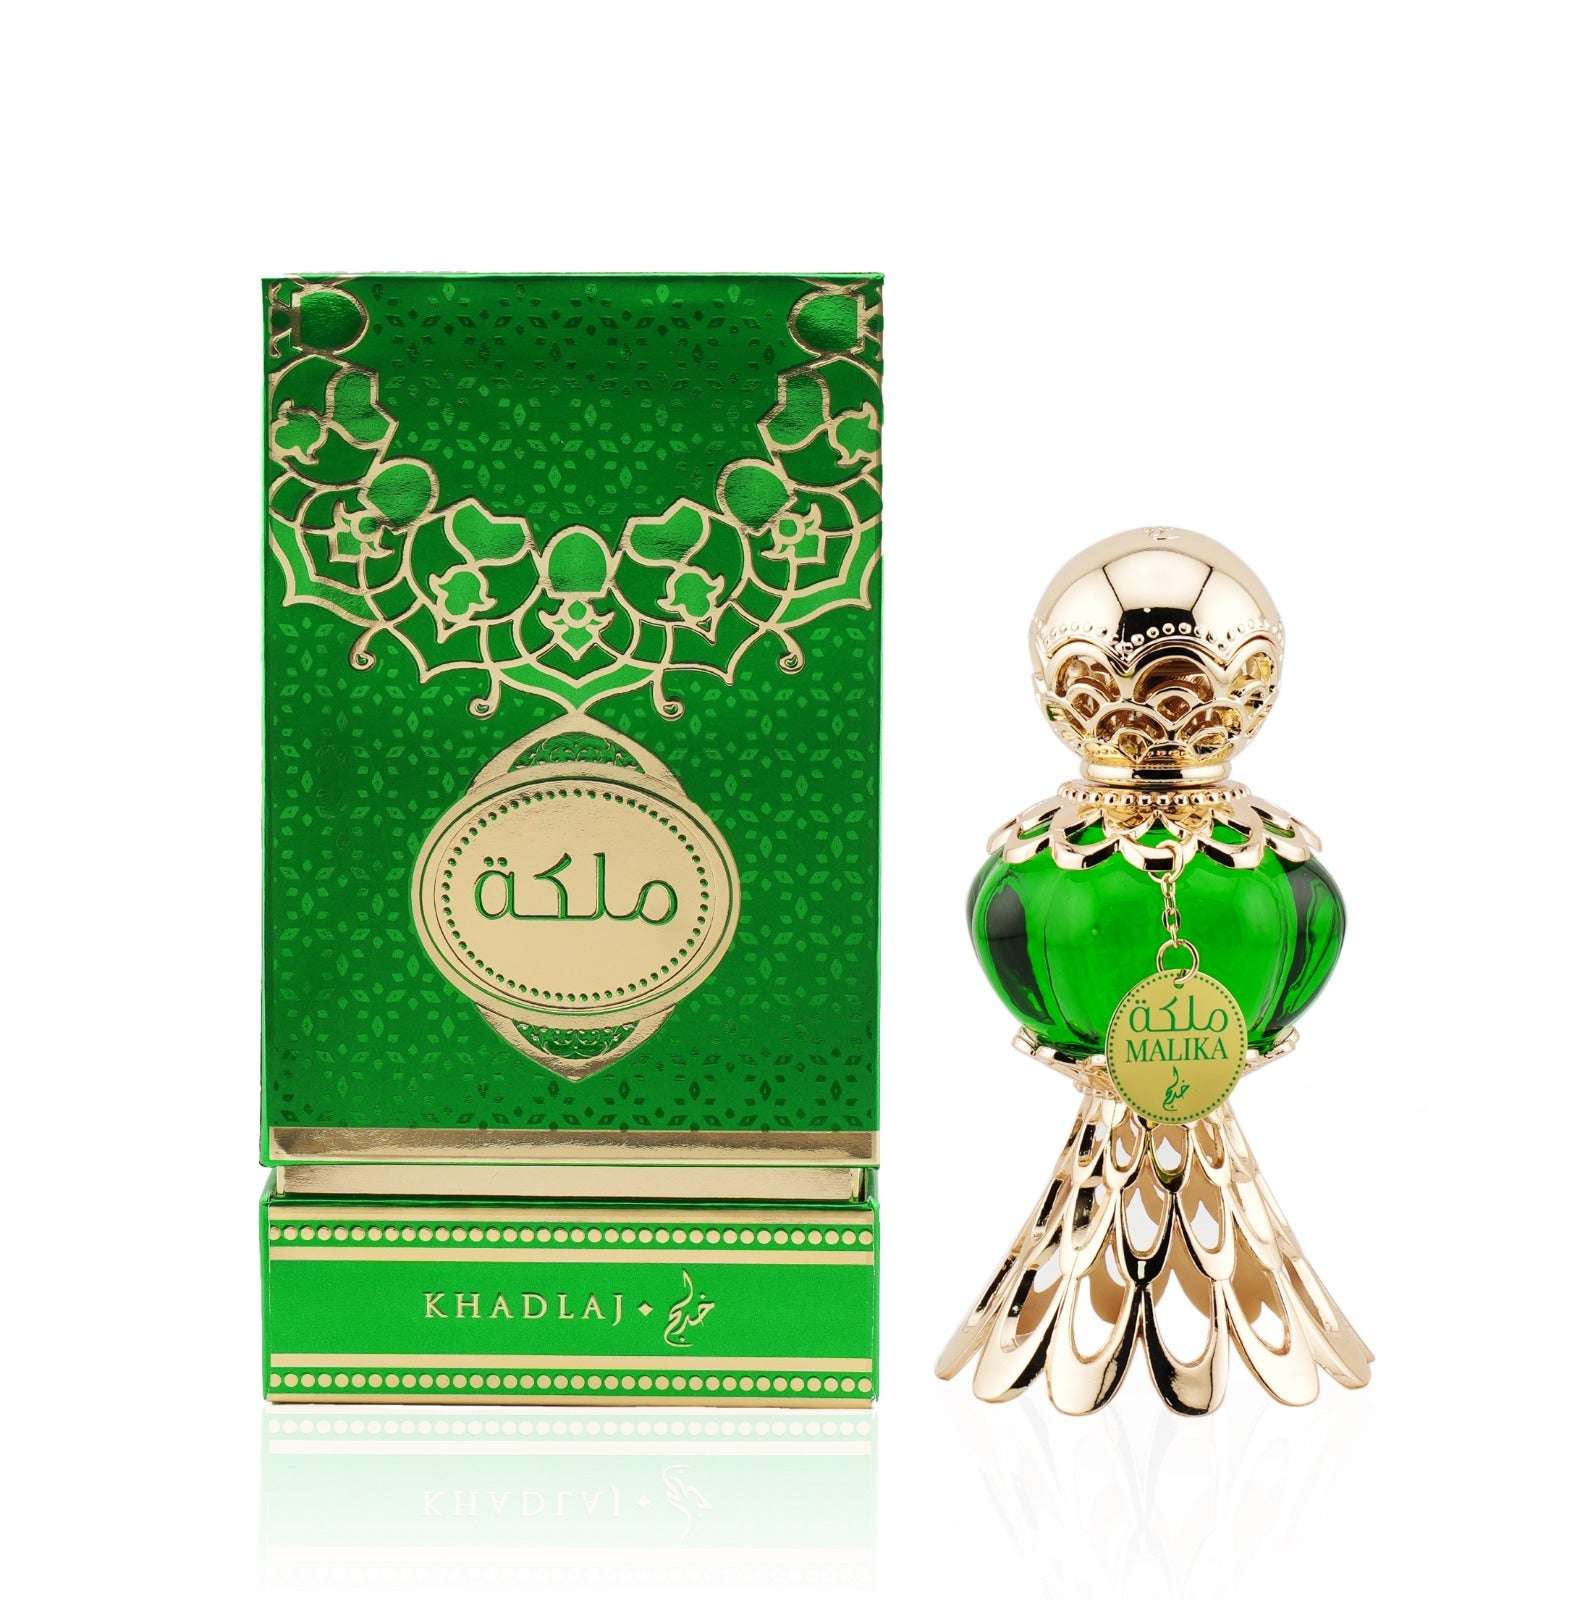 Khadlaj Malika Zielone perfumy olejkowe dla kobiet 15 ml